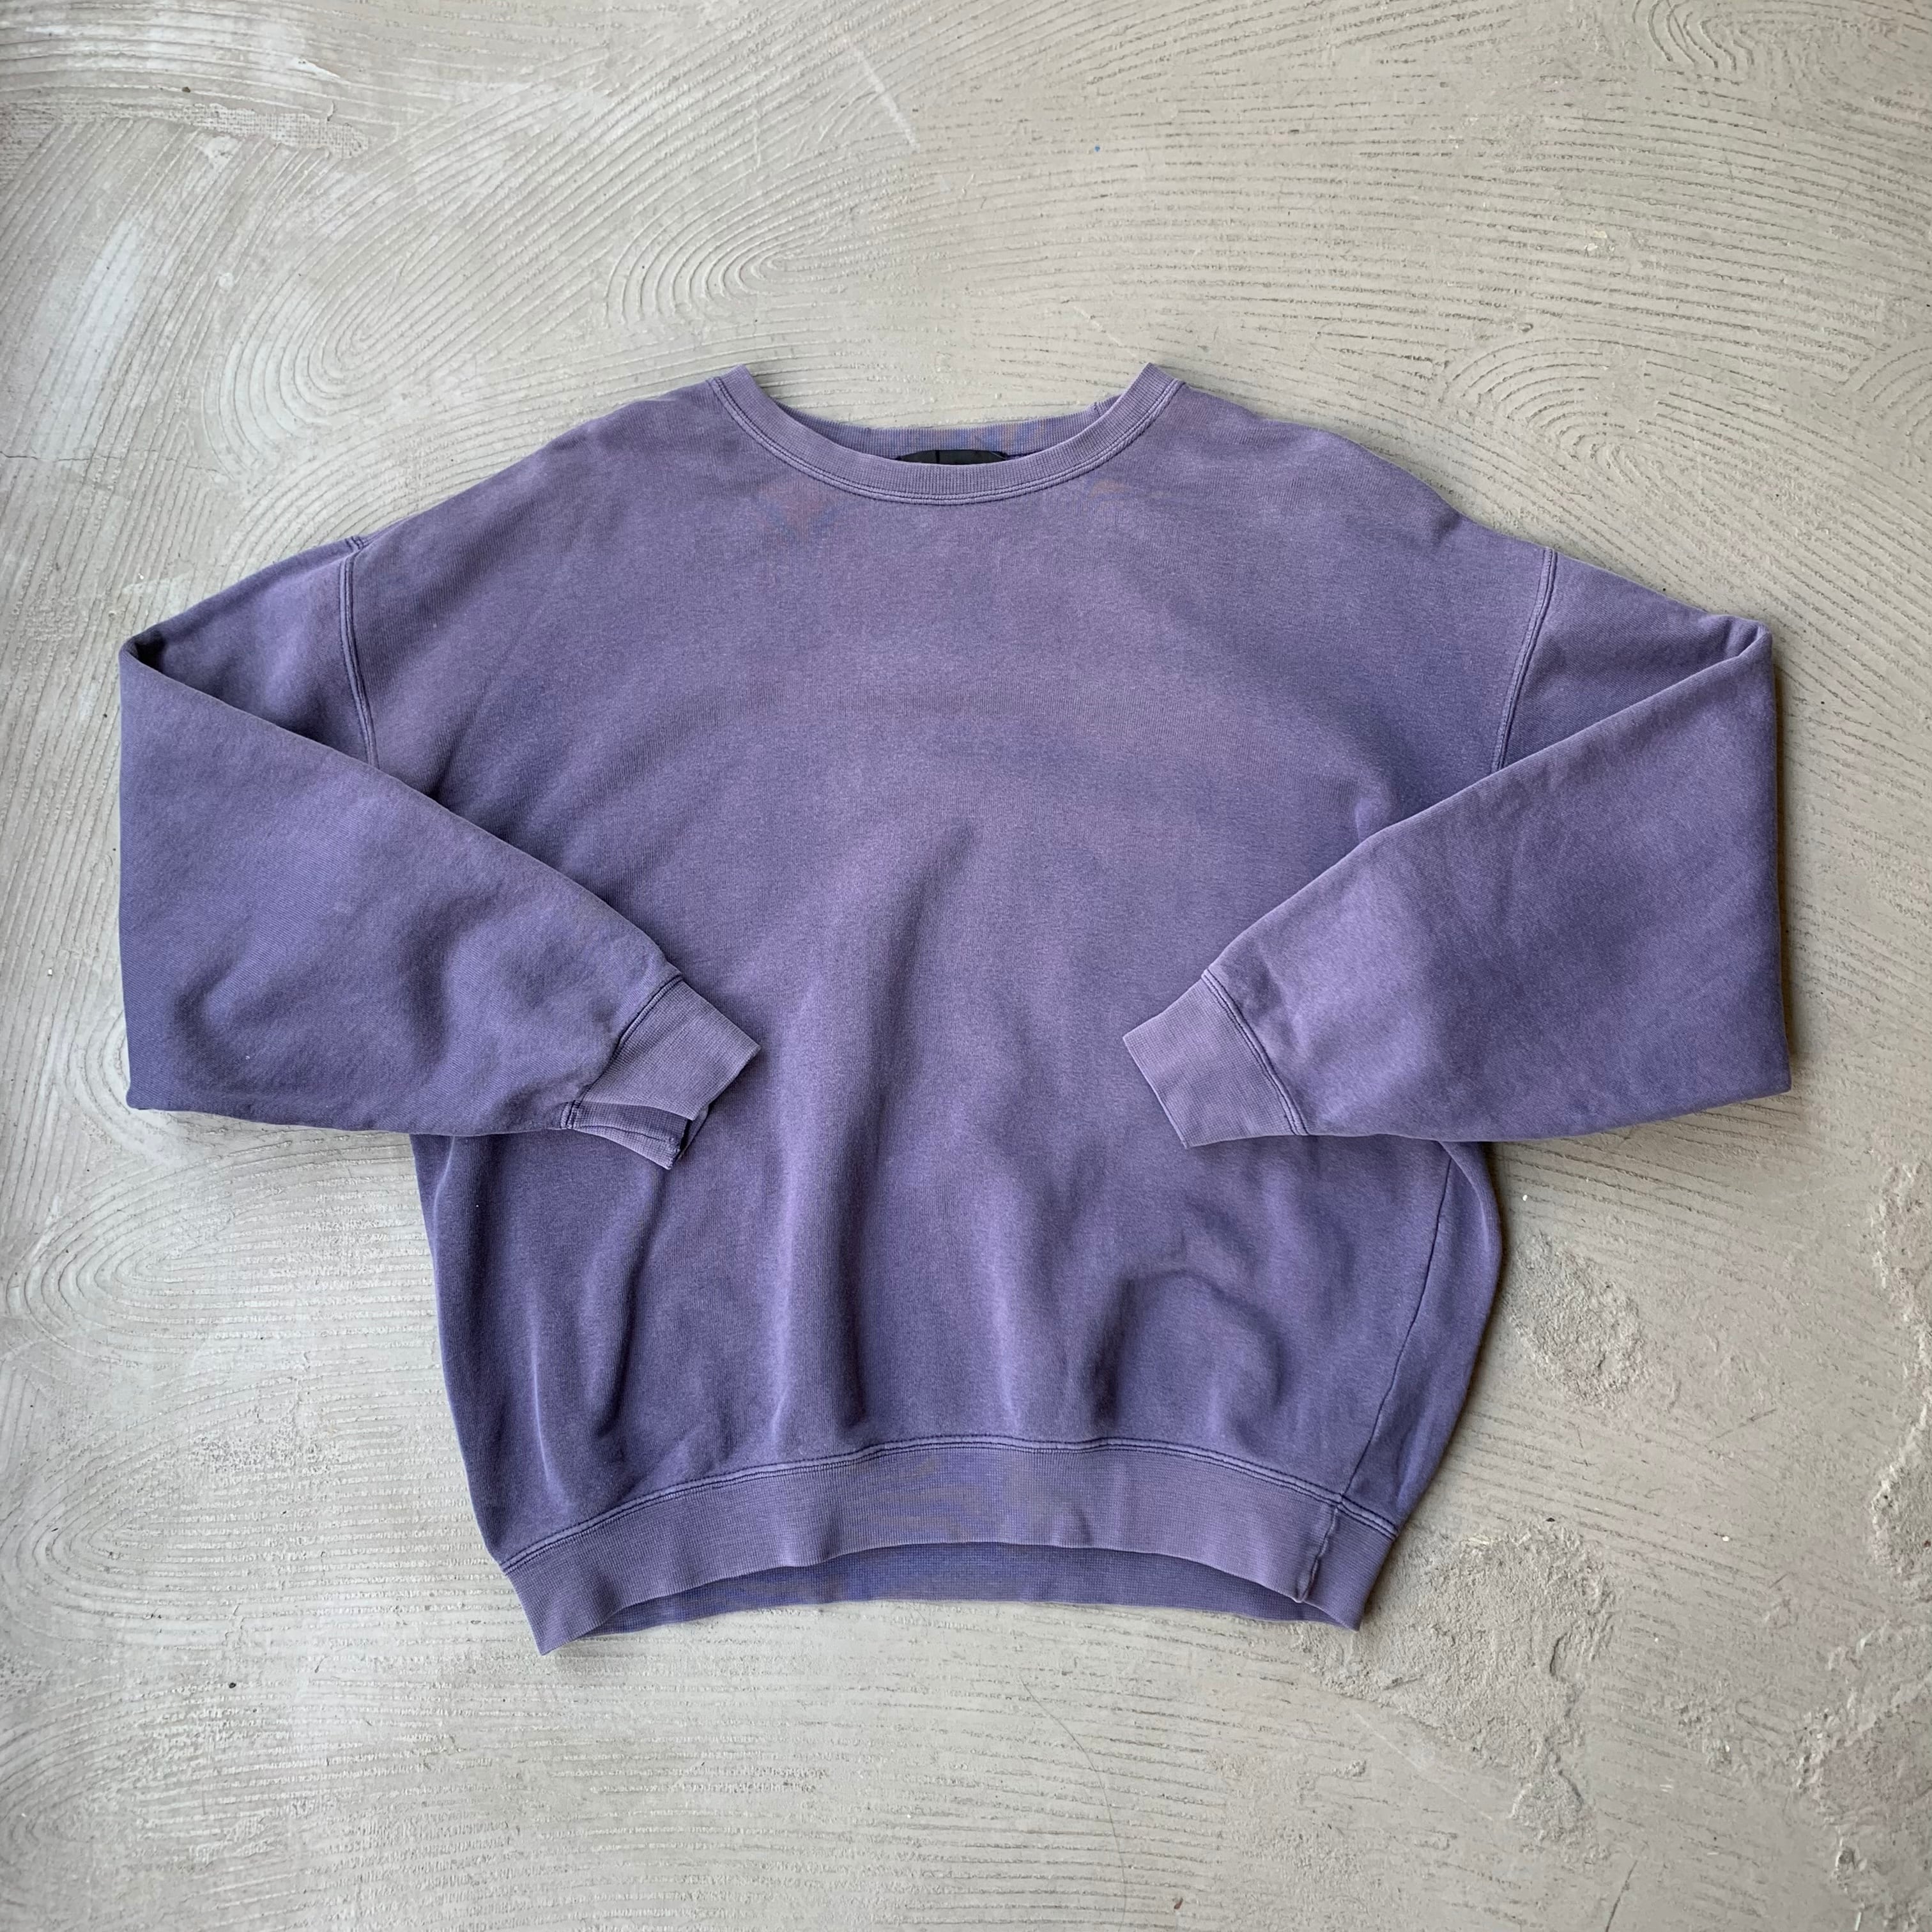 Mr.JUNKO / Faded purple sweat shirt | SAMUEL FINCH / Online store